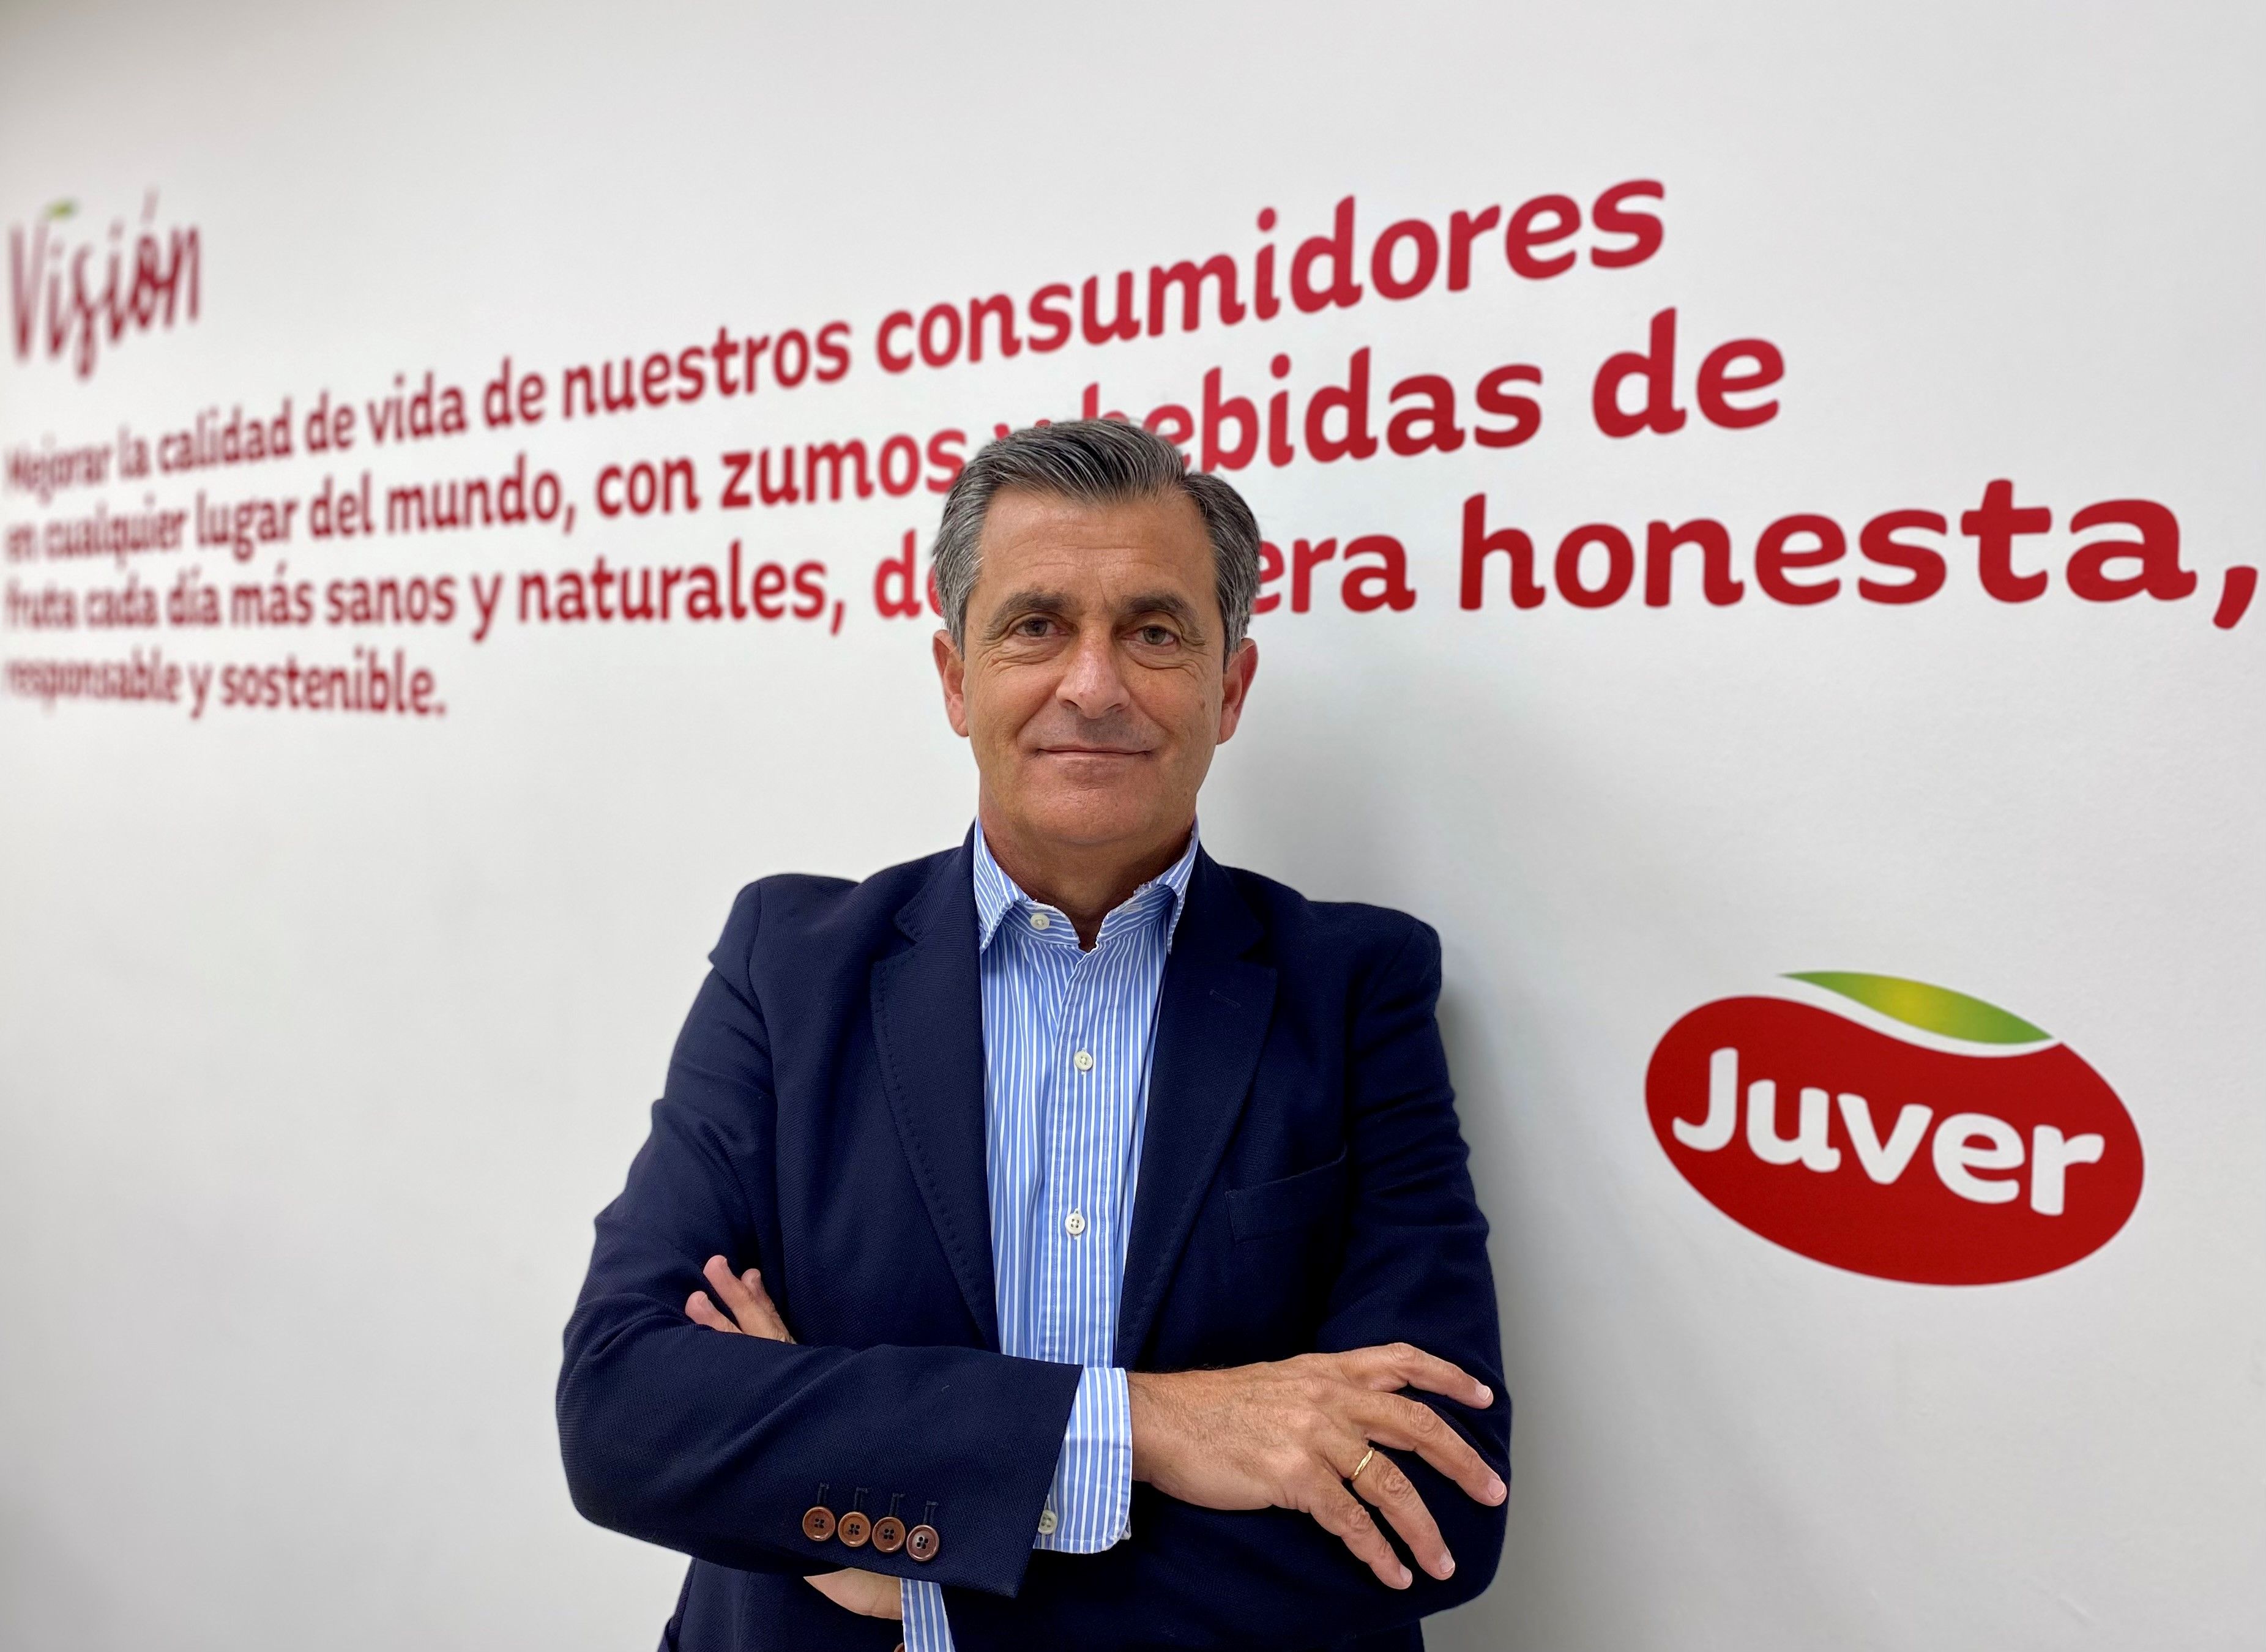 Fotografia D. José Hernández Perona, nuevo CEO de Juver